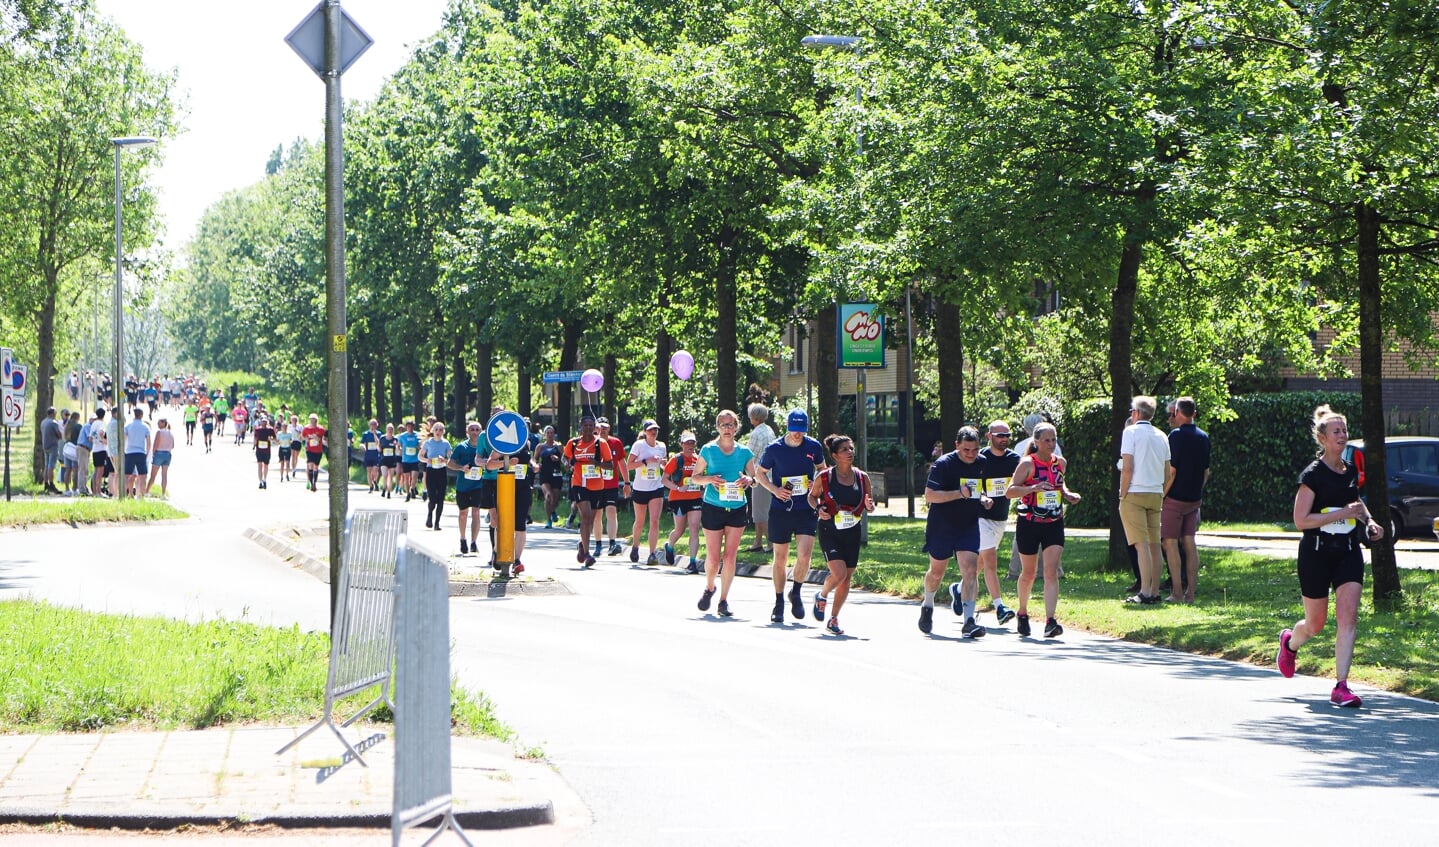 De halve marathon maakte een klein uitstapje door de wijk 't Heerlijk Recht 